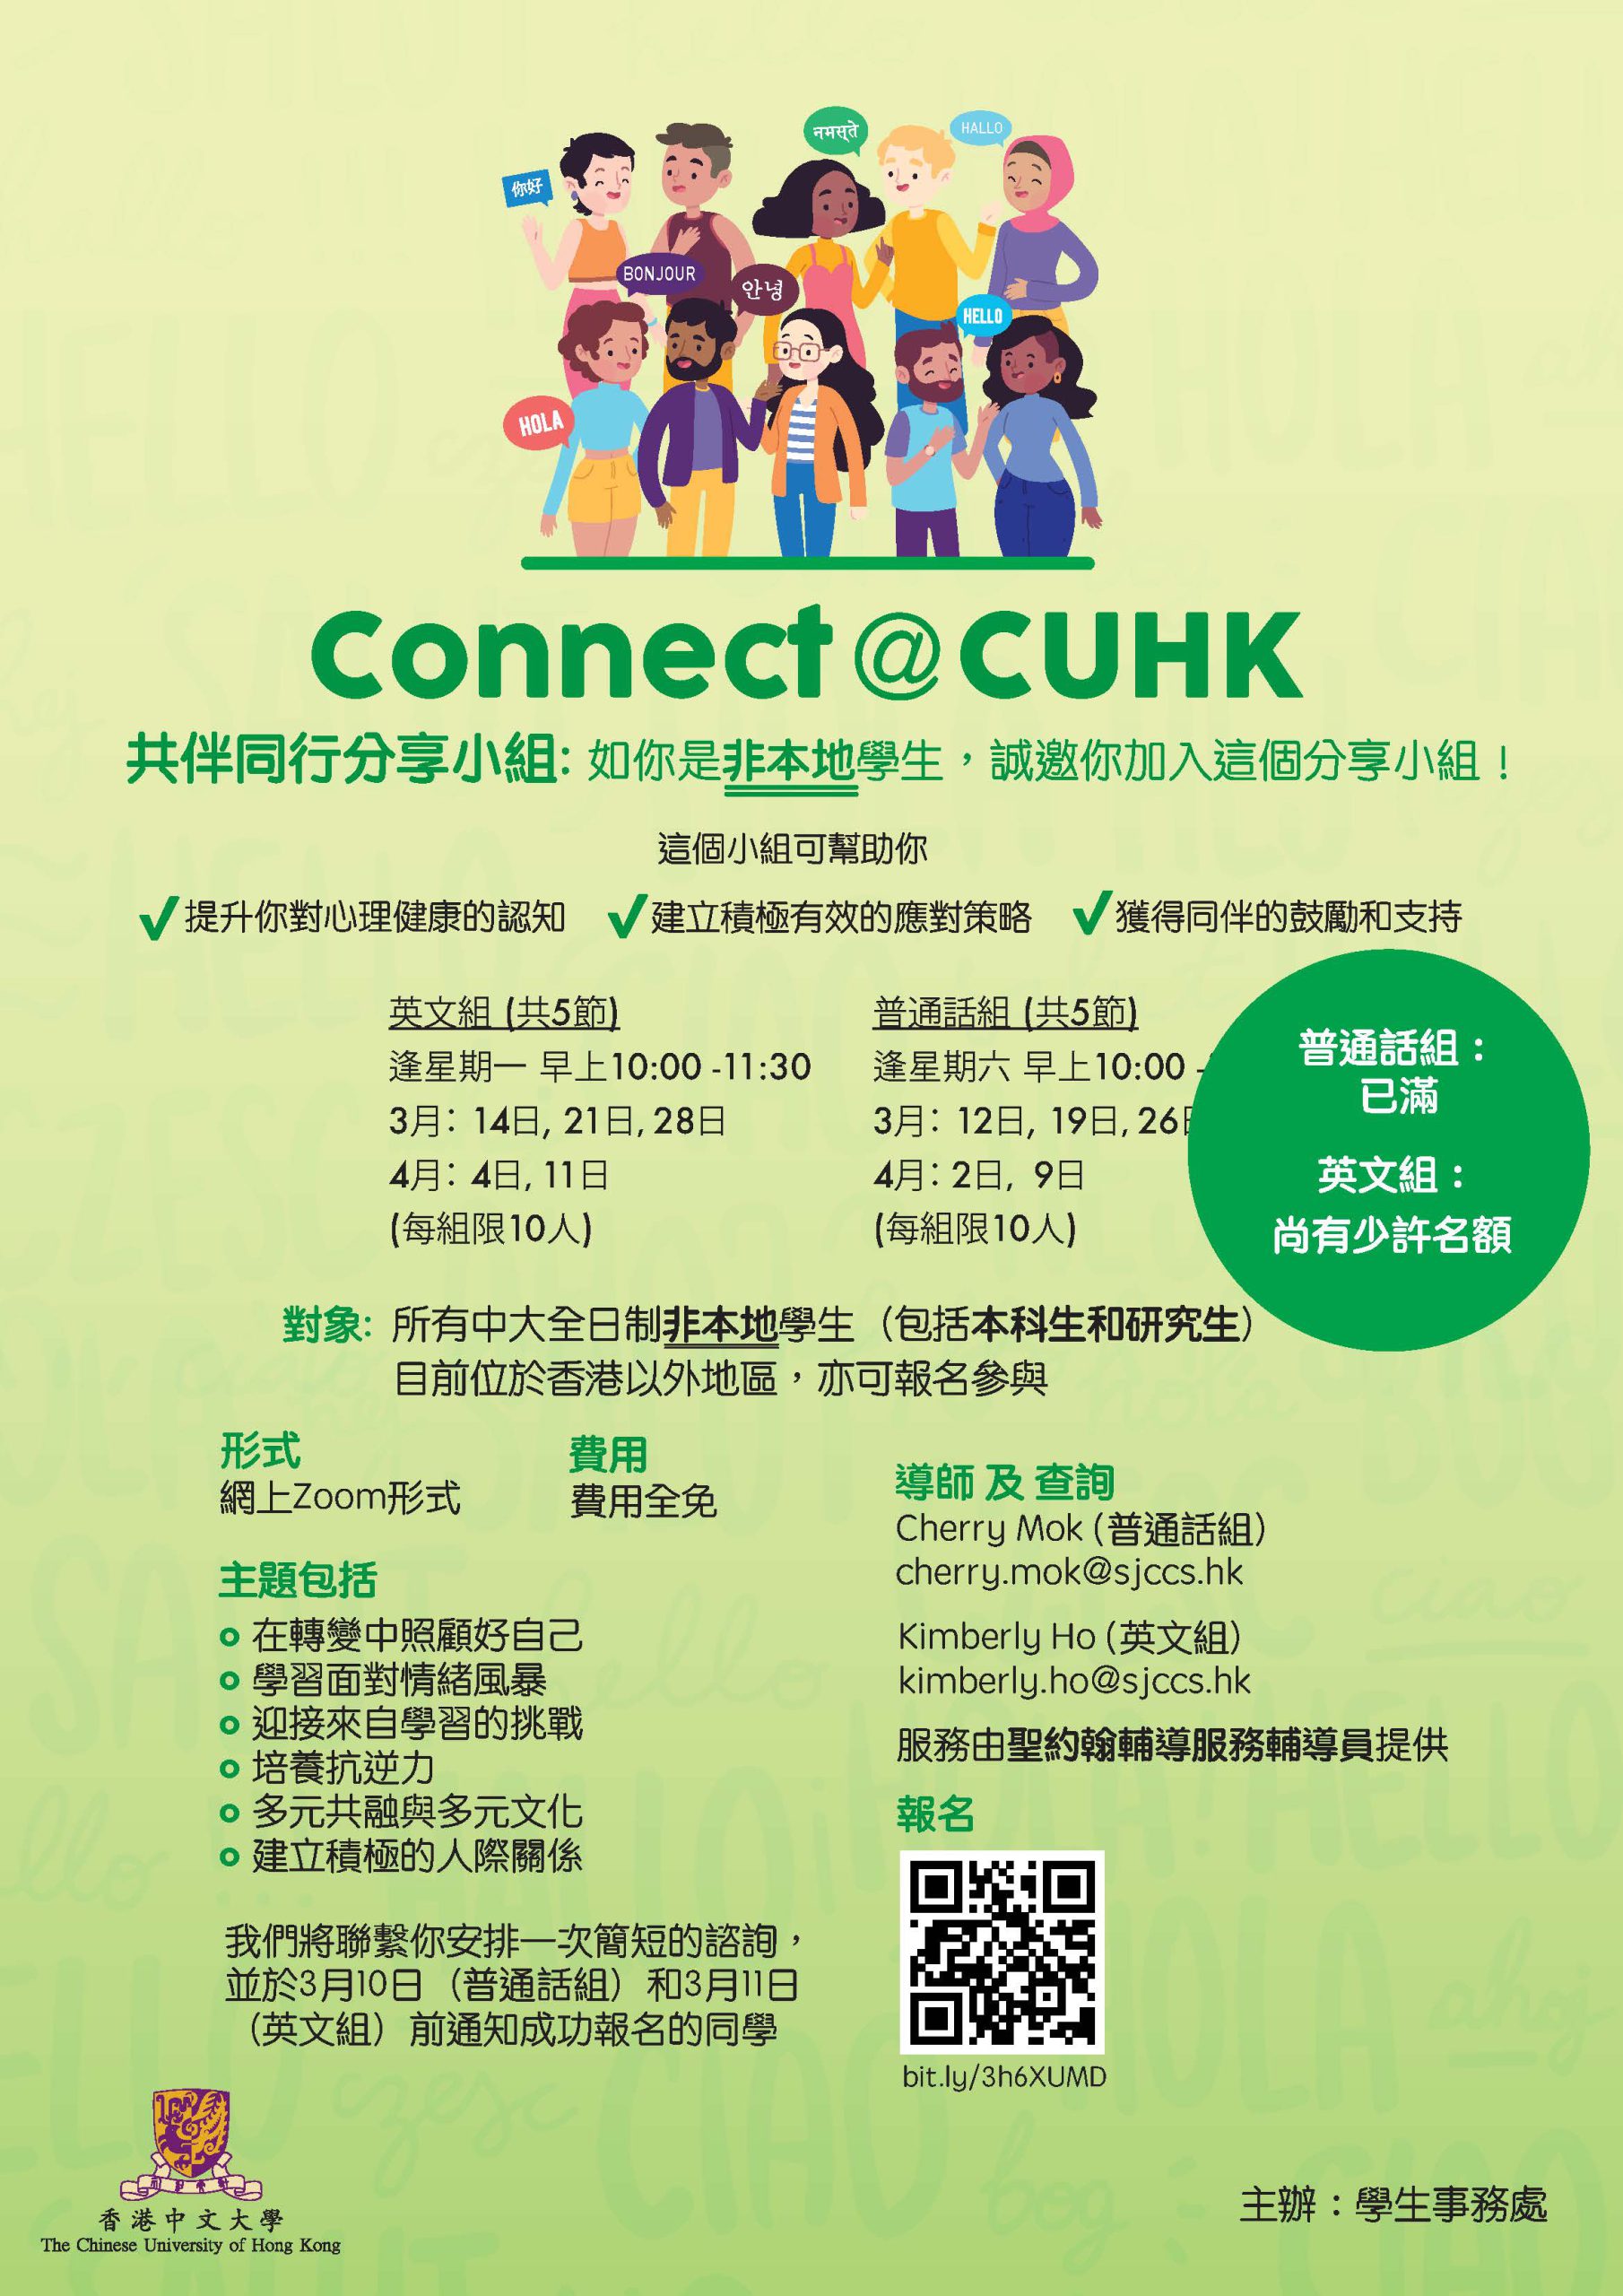 Connect@CUHK 共伴同行分享小组： 为非本地学生提供的分享小组 @学生事务处